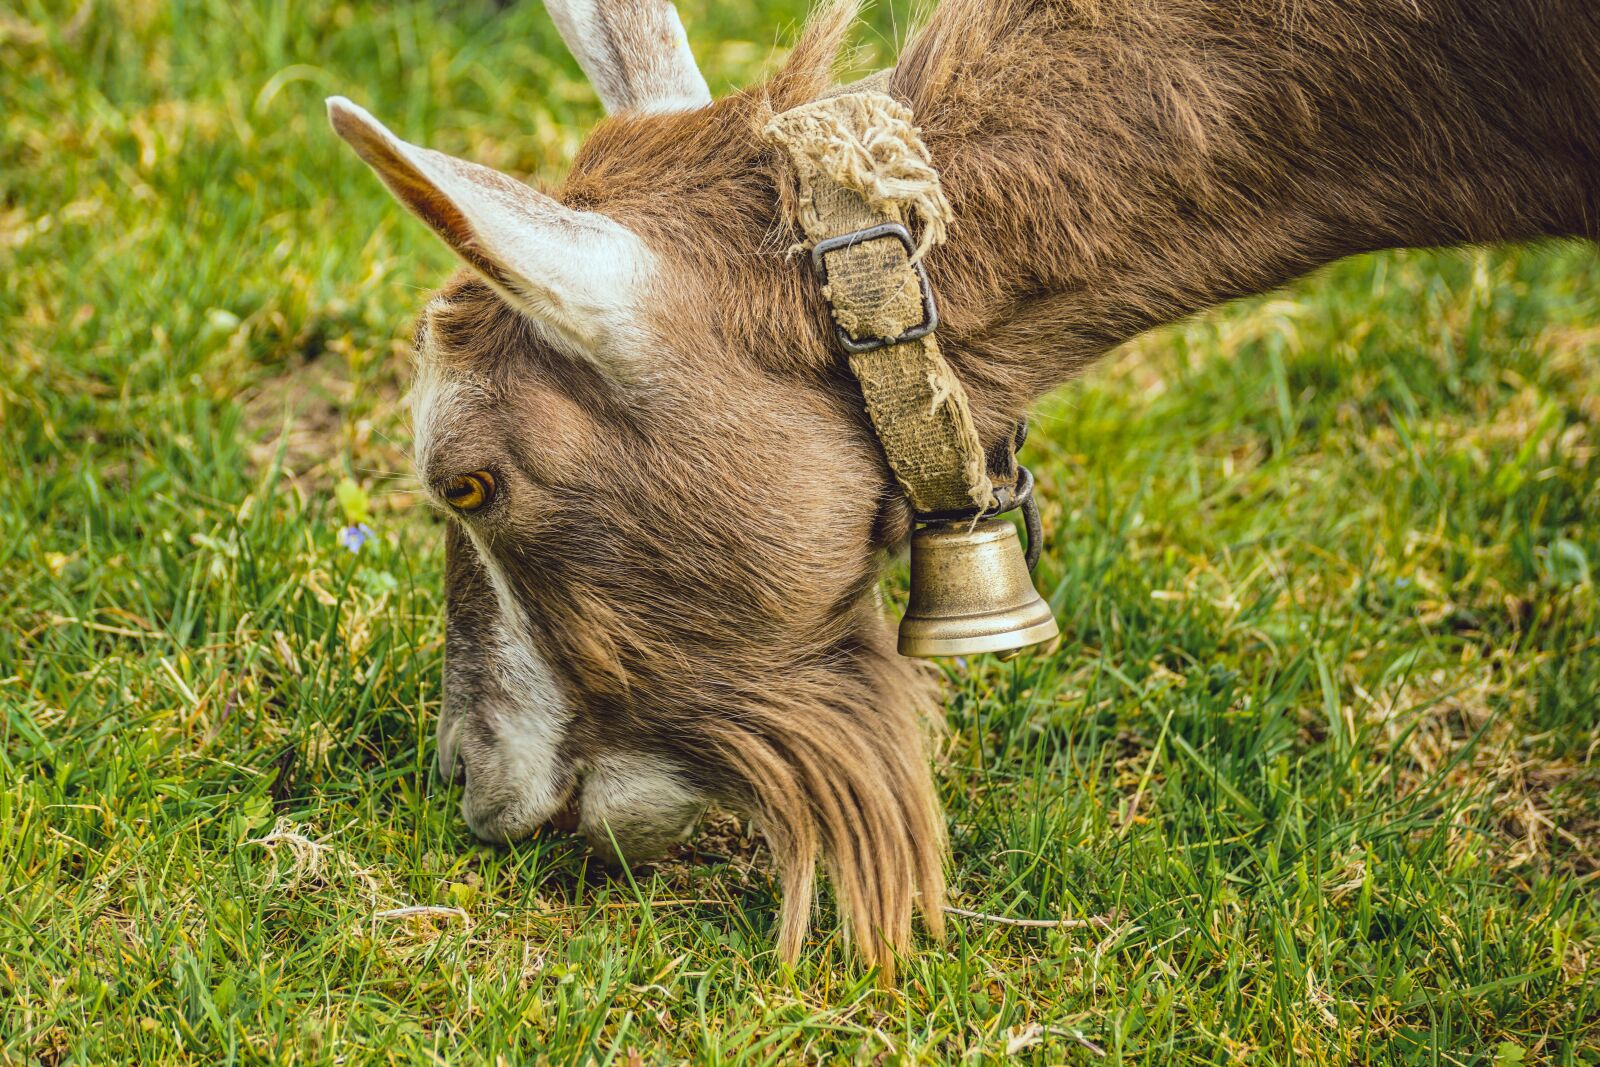 Sony ILCA-77M2 + Sony DT 55-300mm F4.5-5.6 SAM sample photo. Goat, toggenburg goat, mammal photography